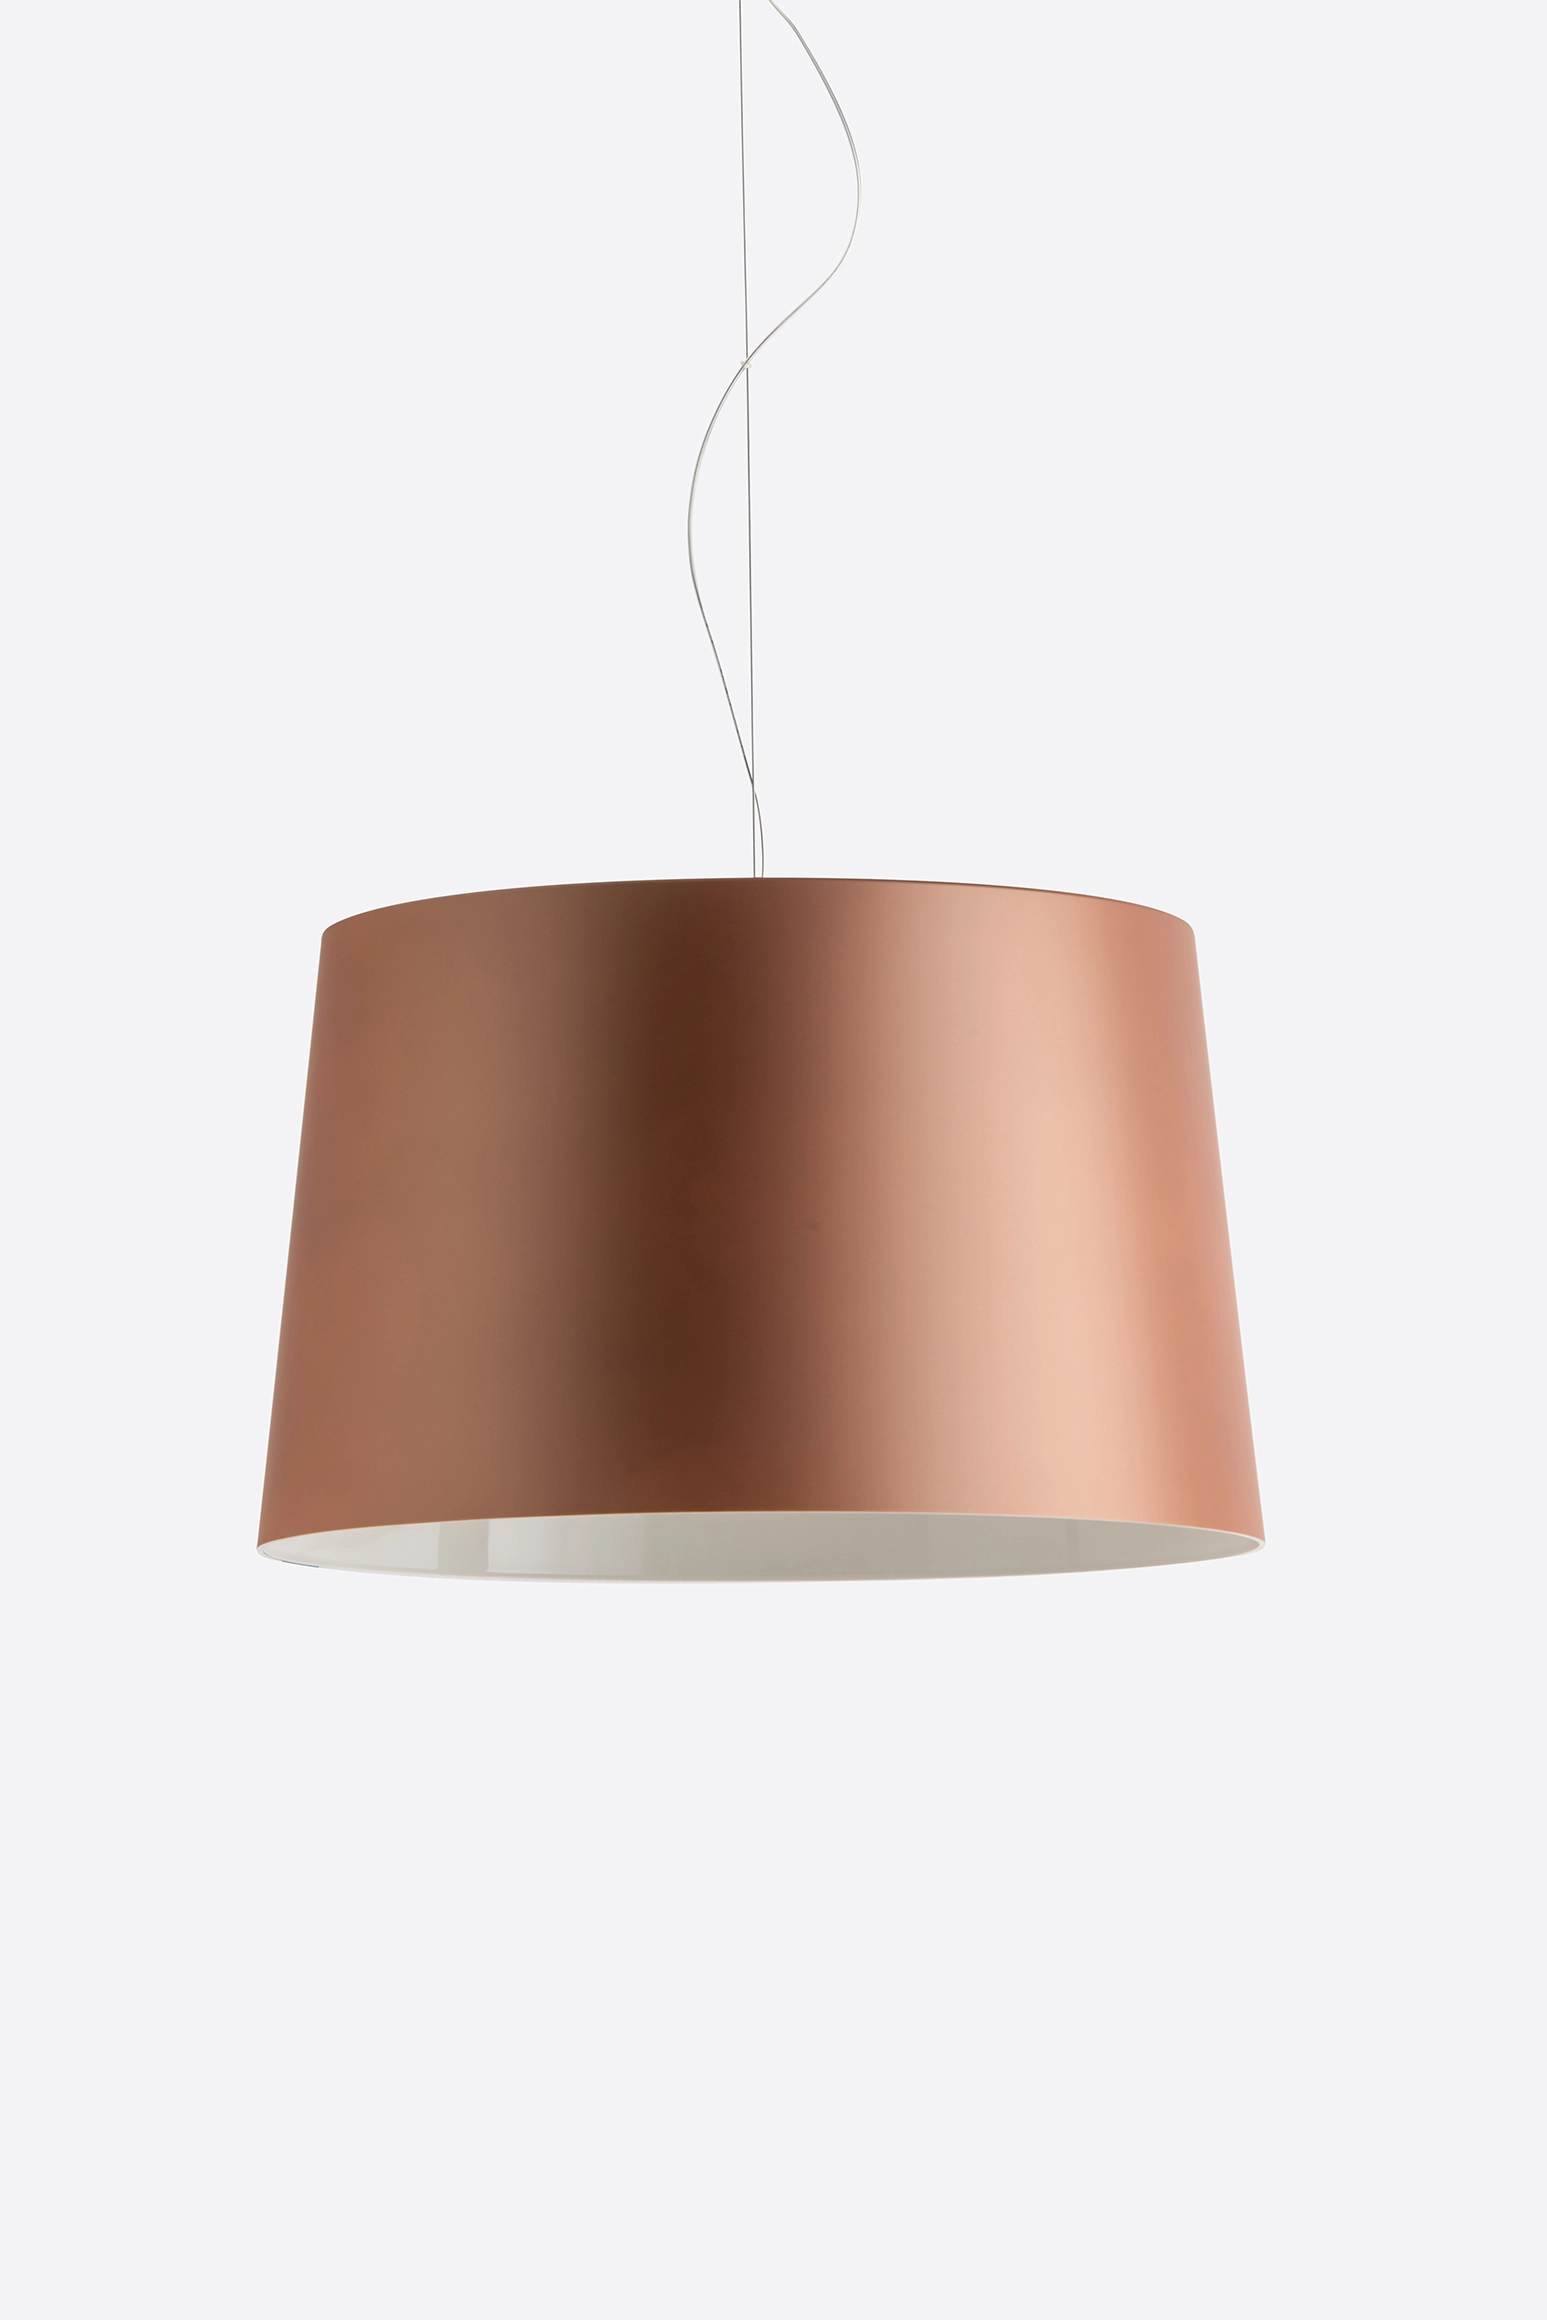 Hängelampe L001S/B SOFT - Design Lampe von Pedrali Soft-touch BE - beige schwarz 1,8 Meter